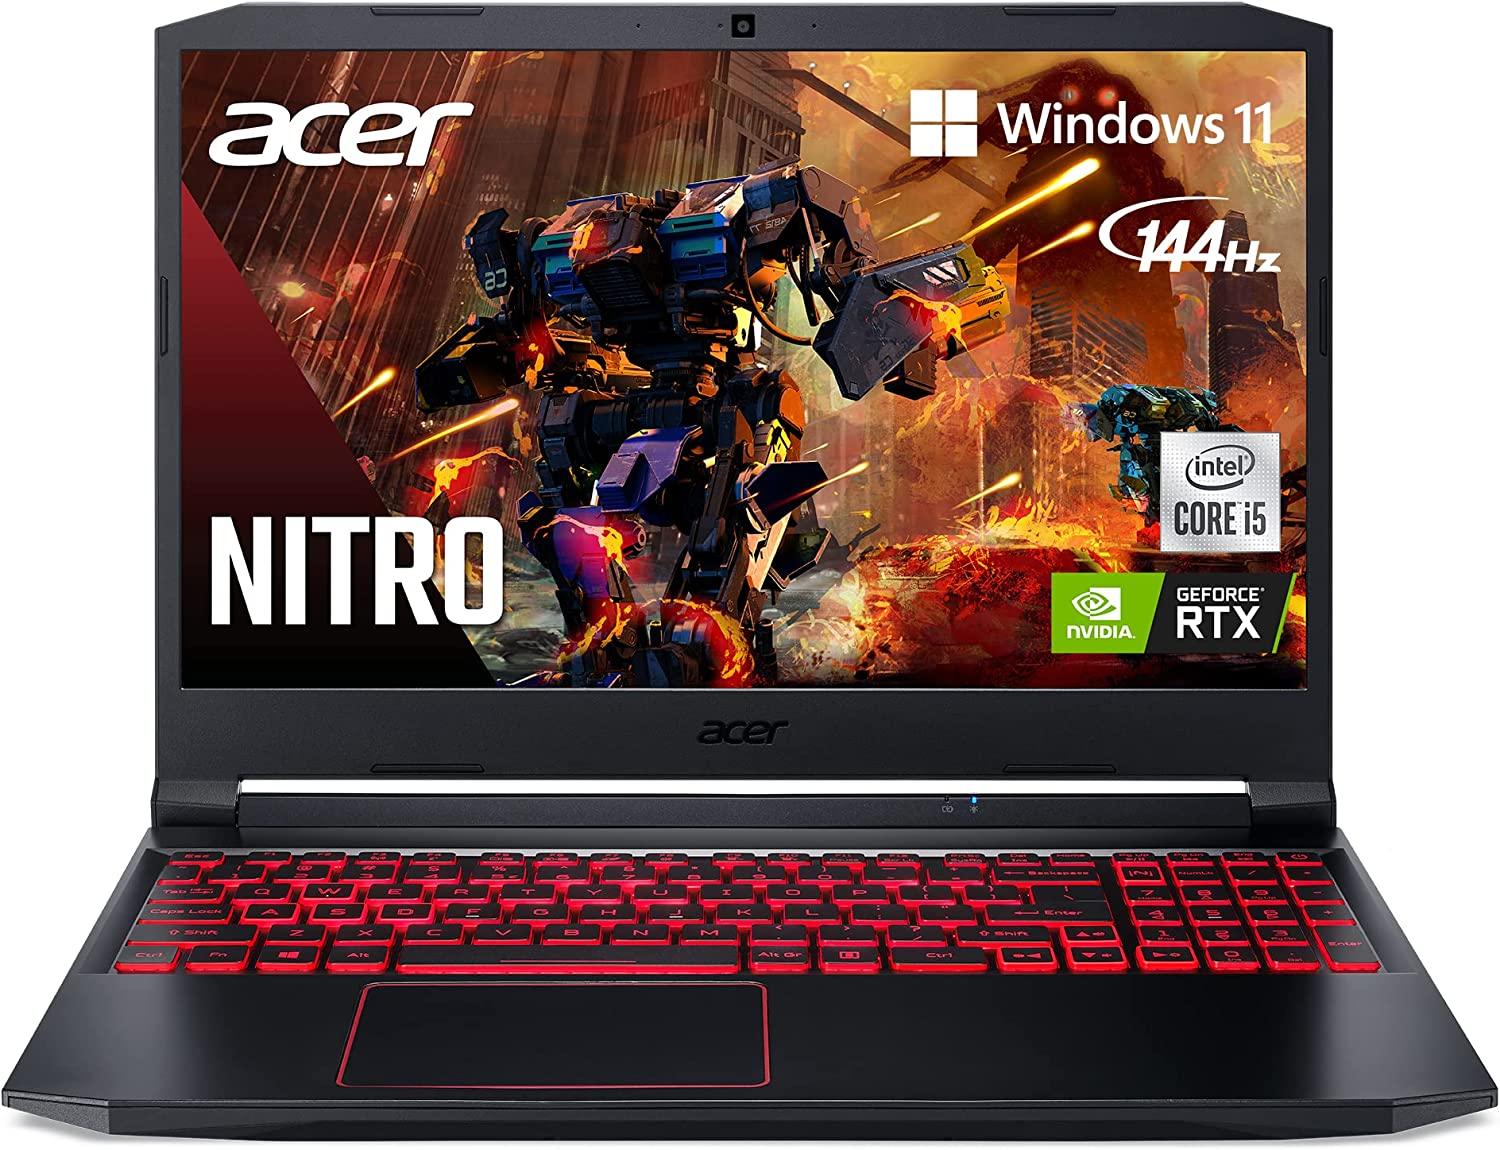 Acer Nitro 5 Full HD, RTX 3050, 8GB RAM, 144hz (Open Box) - Todo Geek